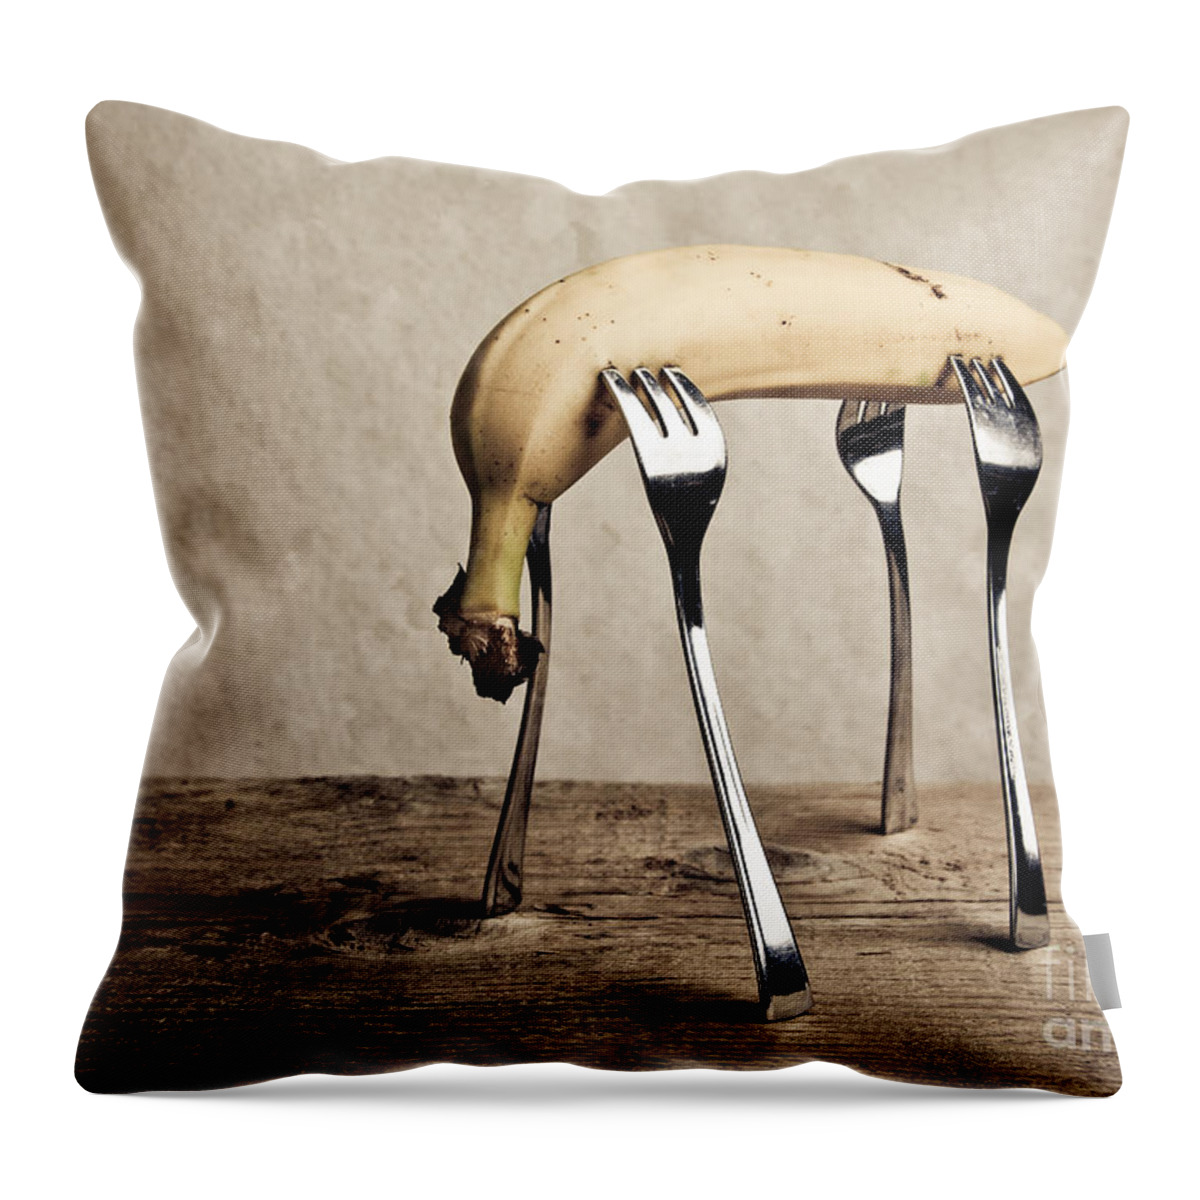 Banana Throw Pillow featuring the photograph Banana by Nailia Schwarz